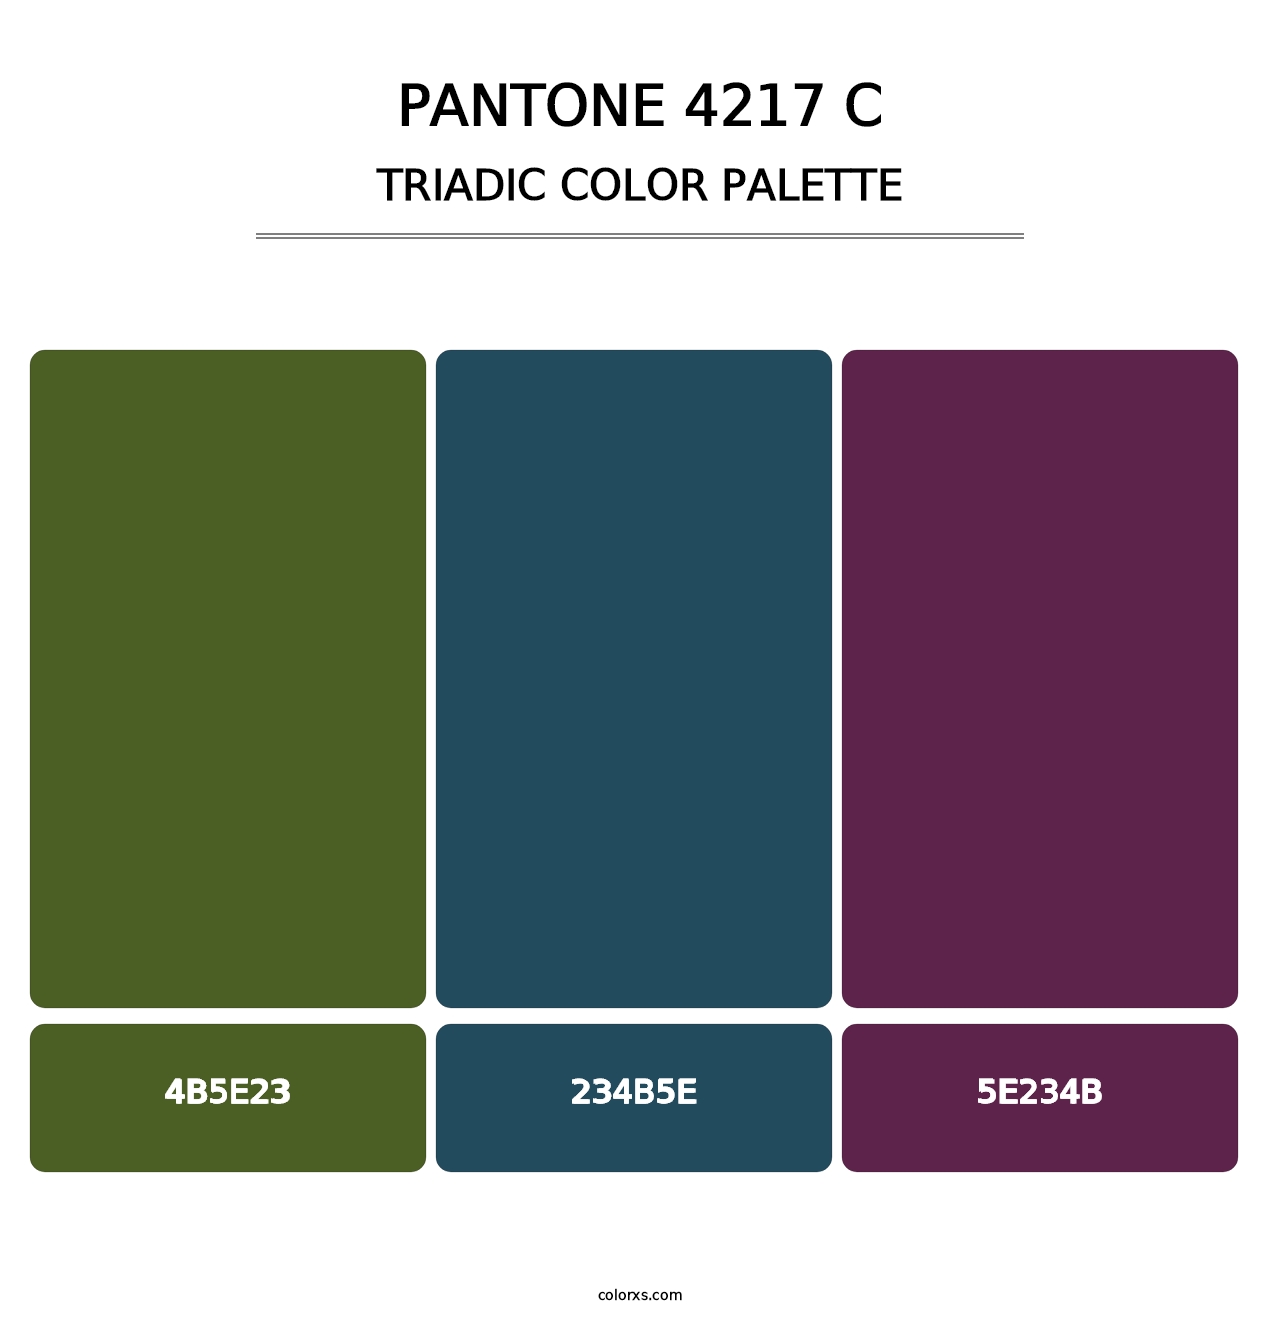 PANTONE 4217 C - Triadic Color Palette